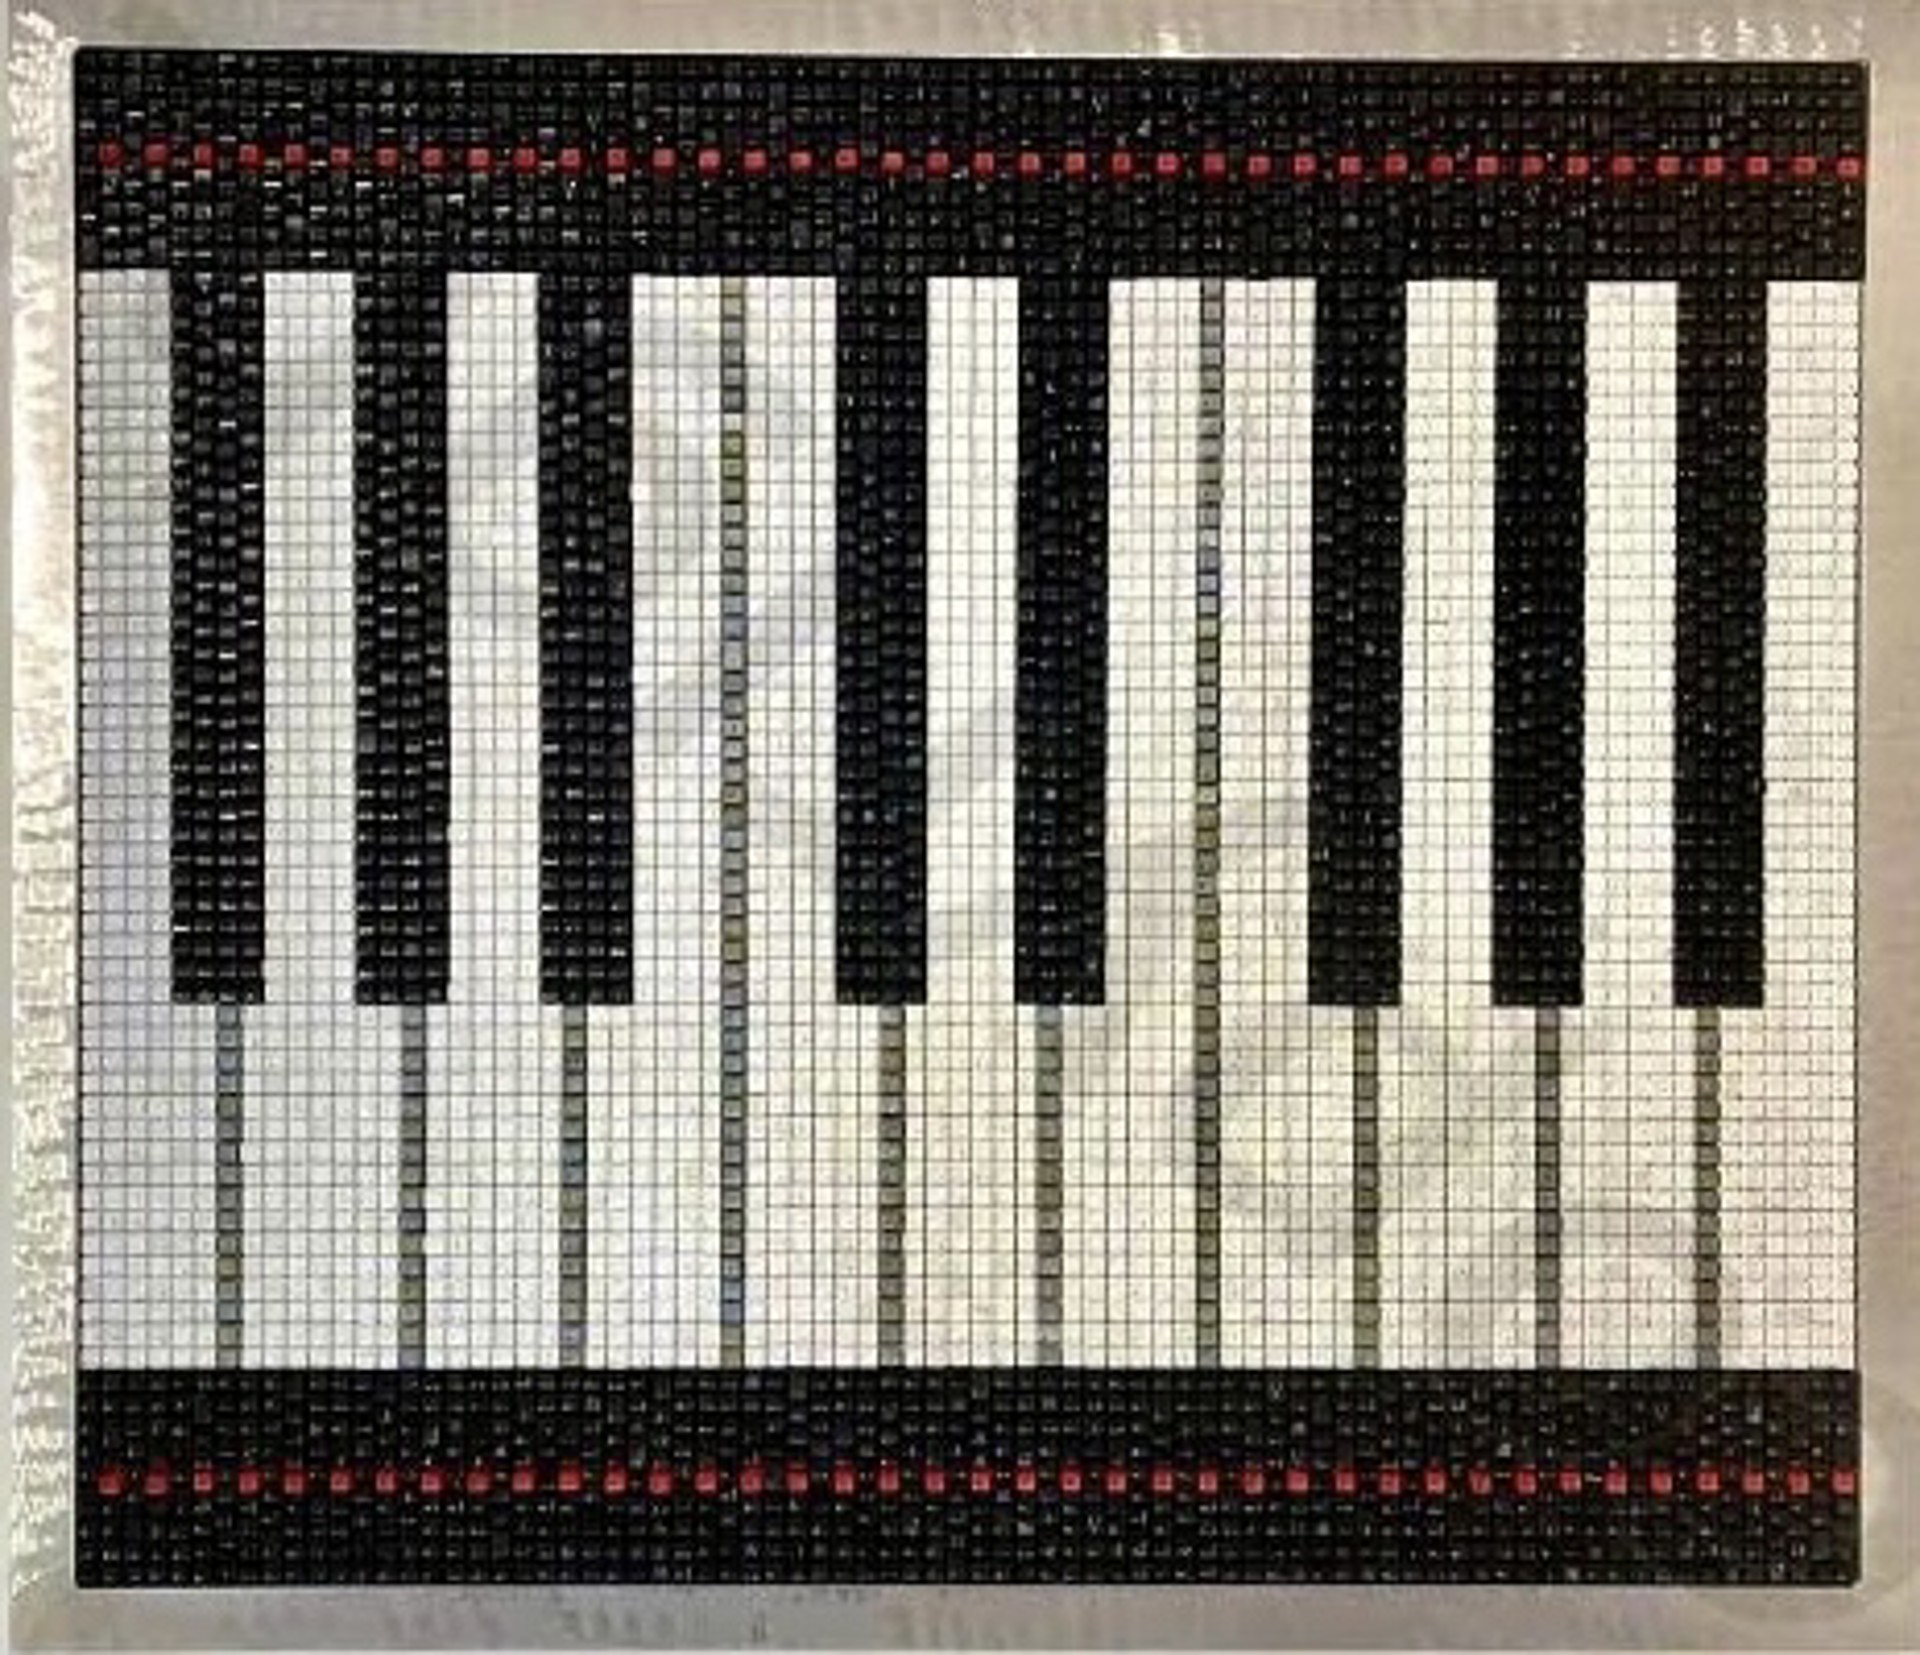 Piano Keys Red Velvet by Doug Powell